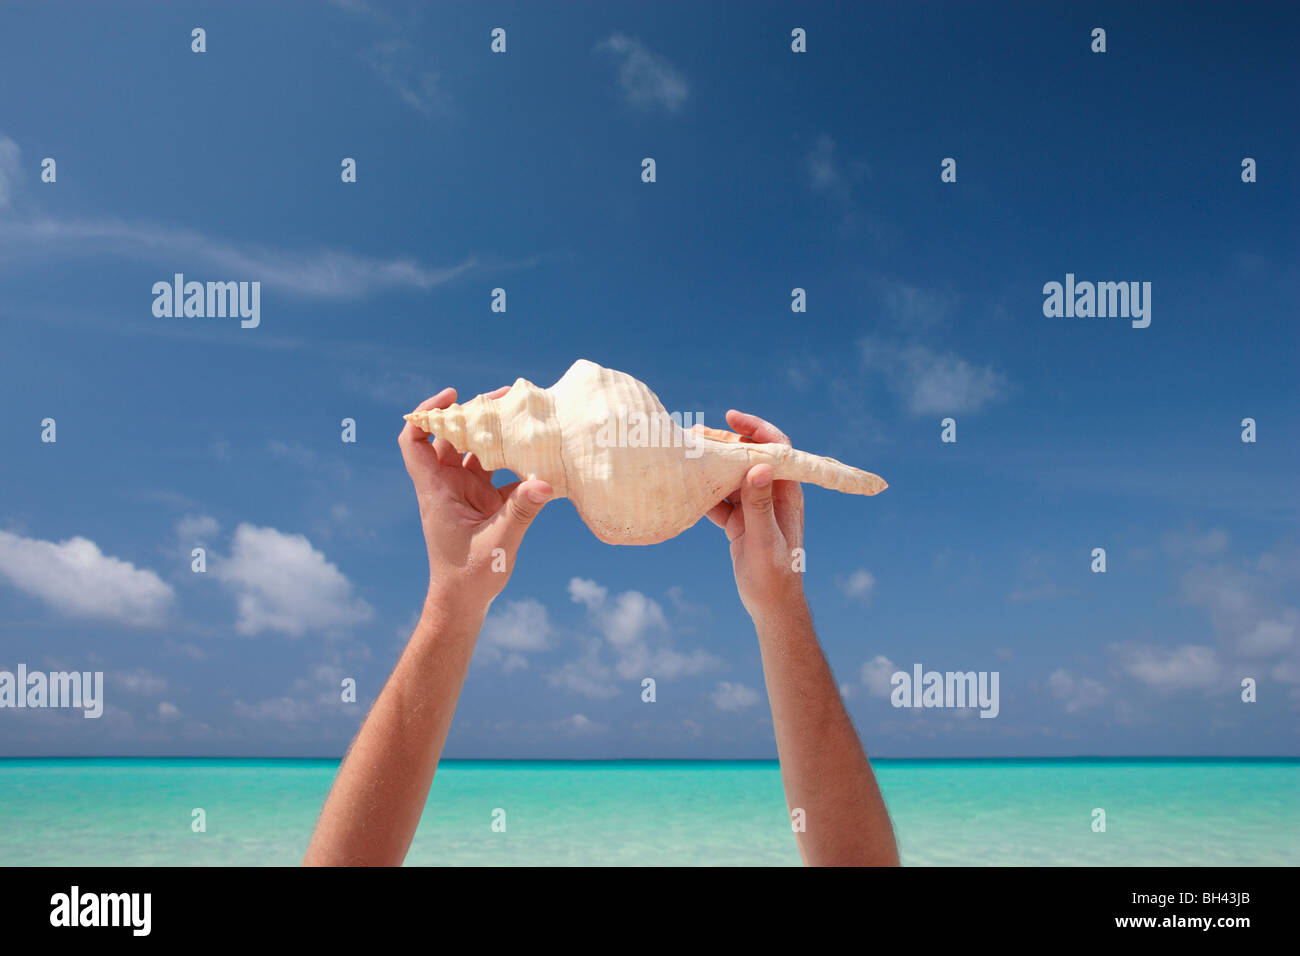 Man's hands holding a large sea shell dans l'air sur une plage tropicale déserte Banque D'Images